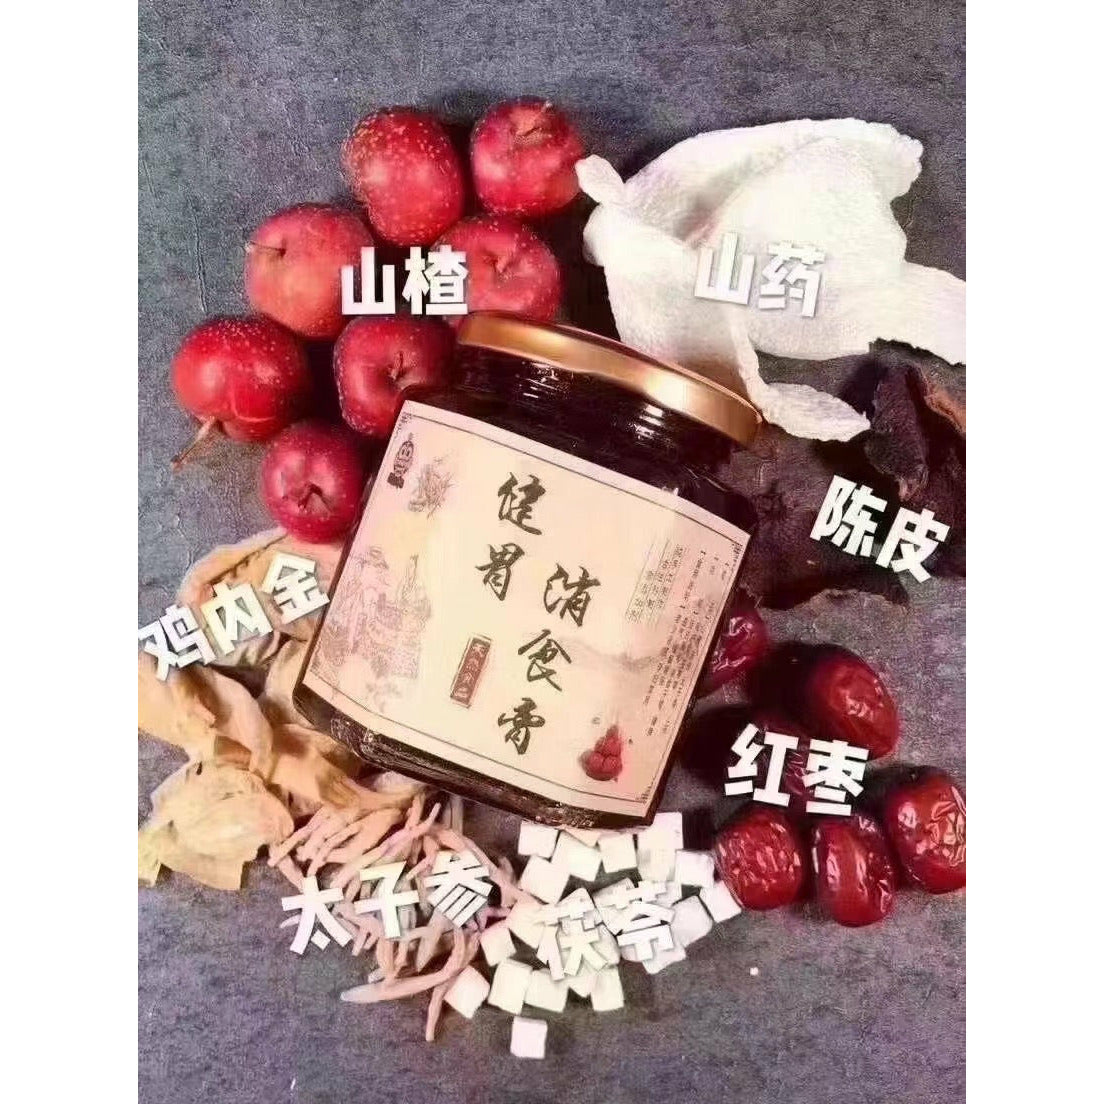 1- Jianwei Xiaoshi ointment